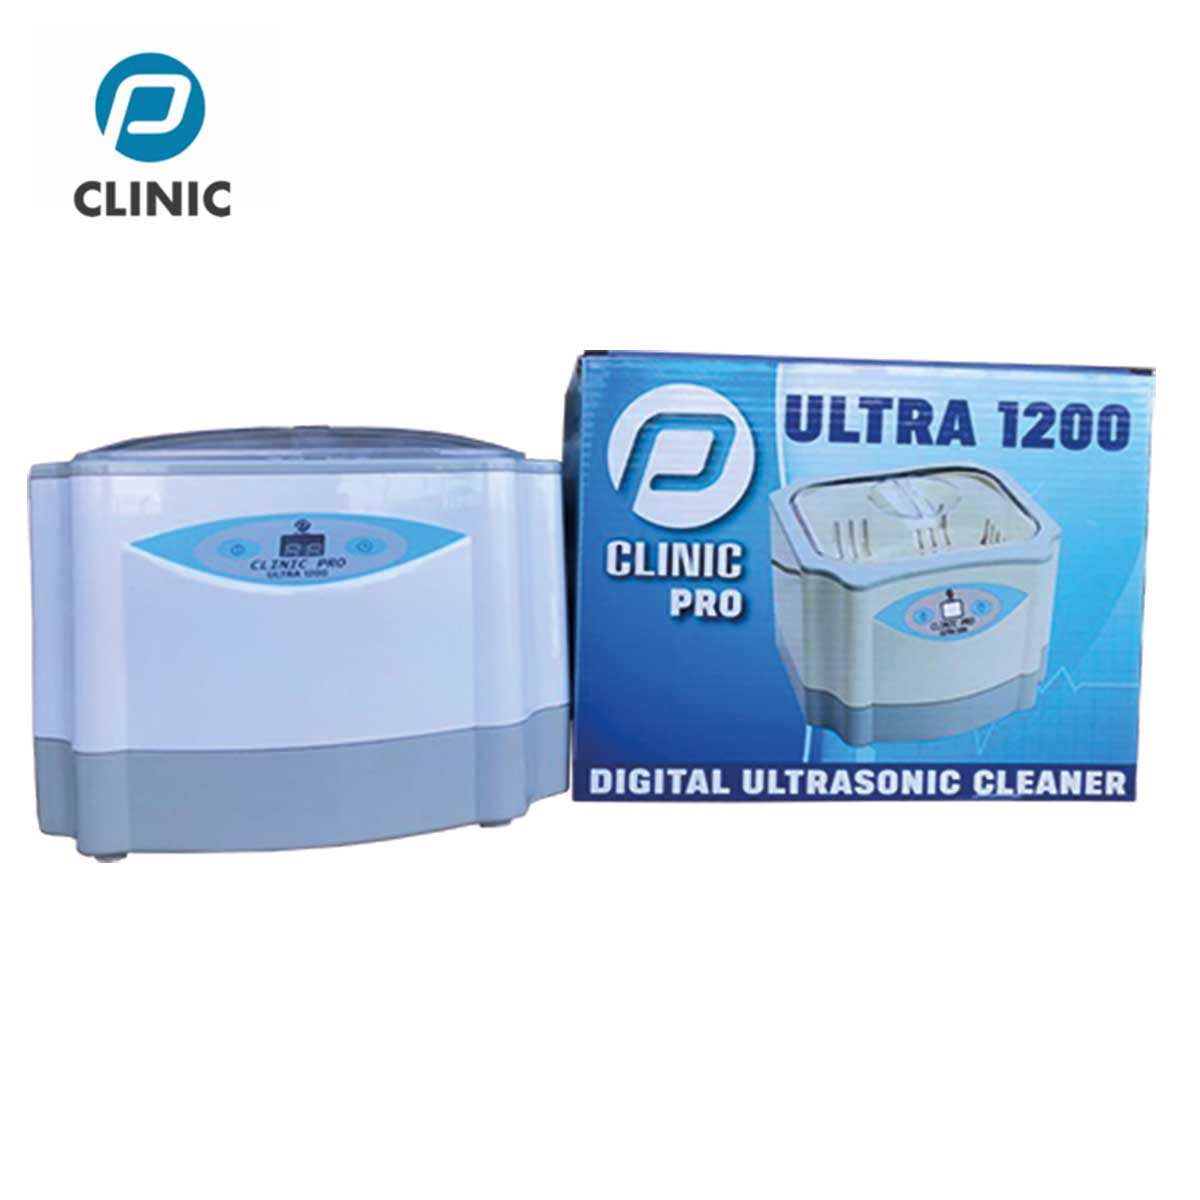 PClinic Pro Ultrasoon Ultra 1200 gebruiken met de Podisonic , pedicure manicure ontsmetting en reiniging voor alle materialen Sint-Niklaas